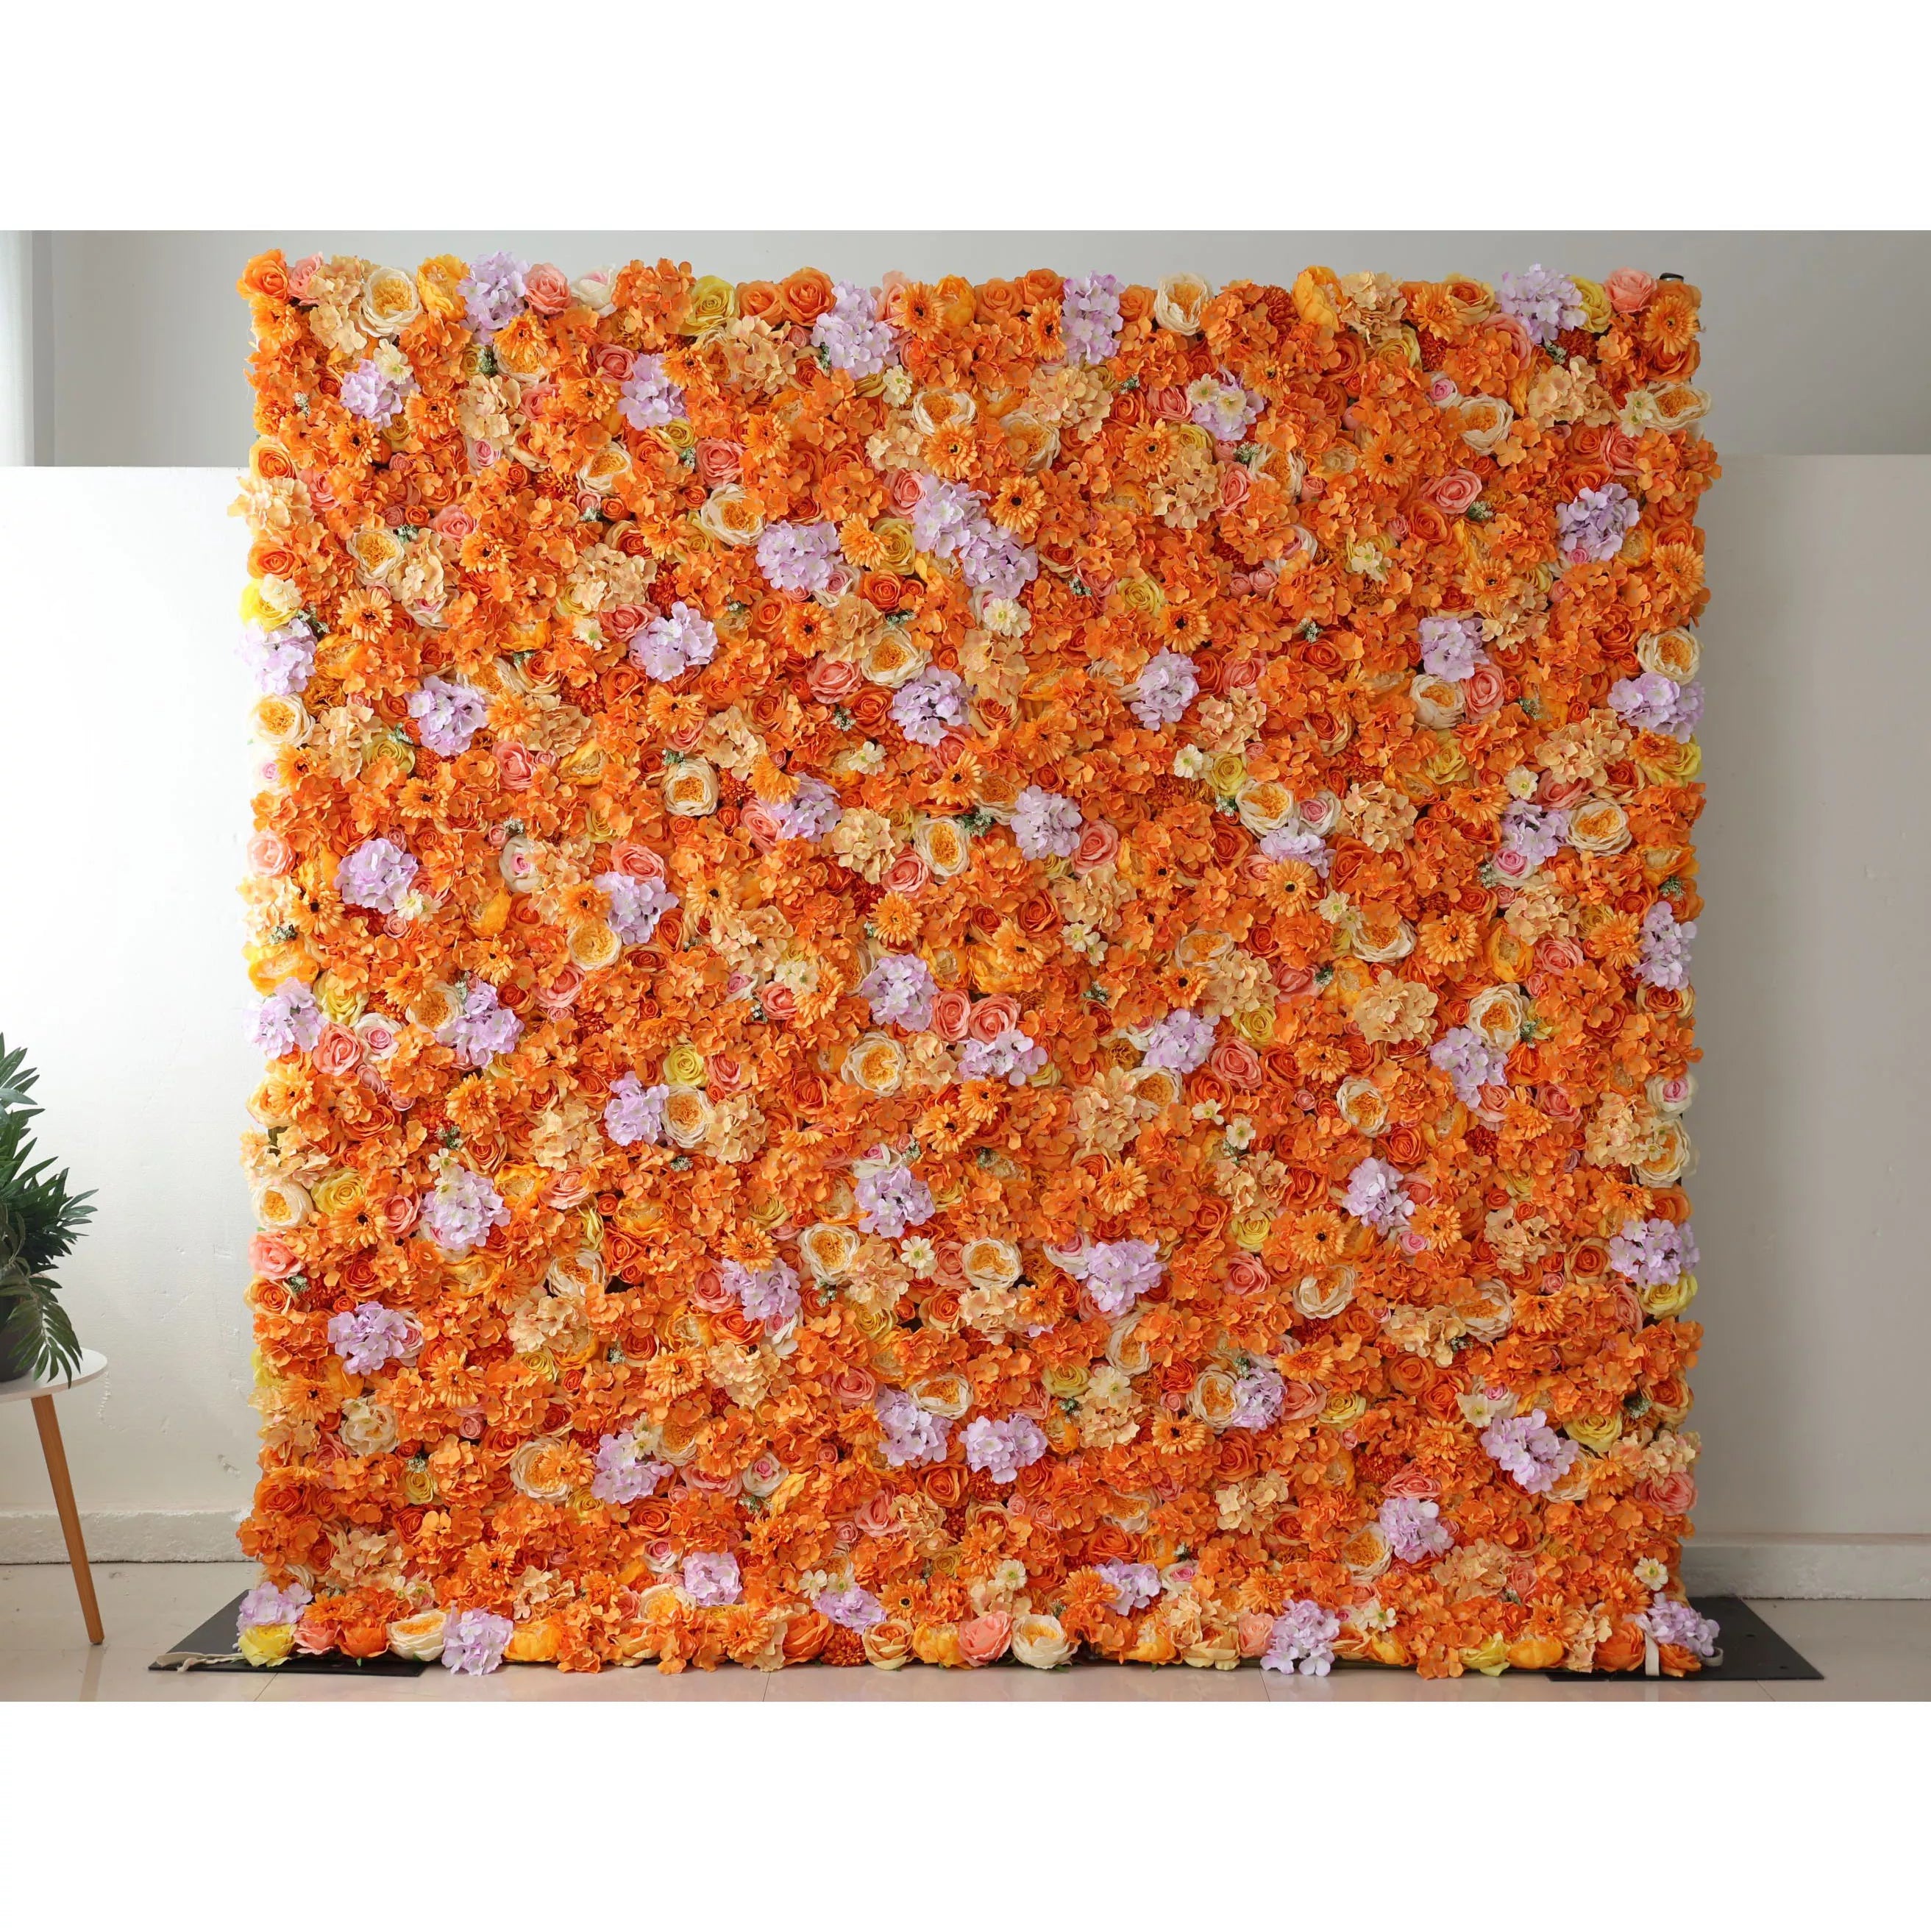 Valar Flowers Roll Up Fabric Artificielle Papaye Orange et Jaune Fleur Mur Toile de fond de mariage, Décor de fête florale, Photographie d'événement-VF-060 